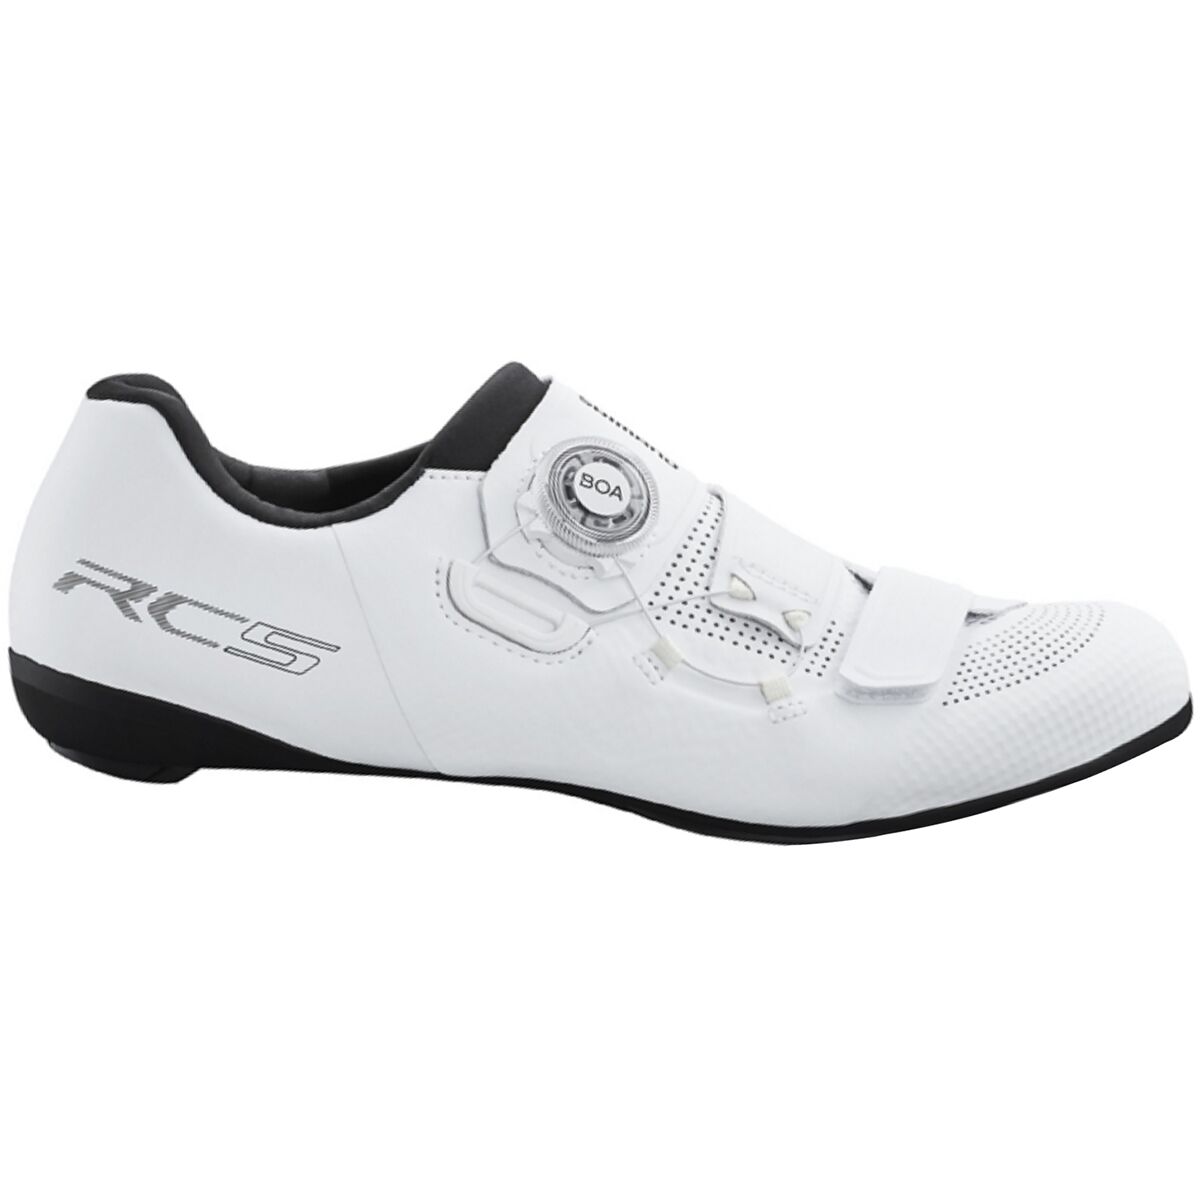 Shimano SH-RC5 Limited Edition Cycling Shoe - Women's